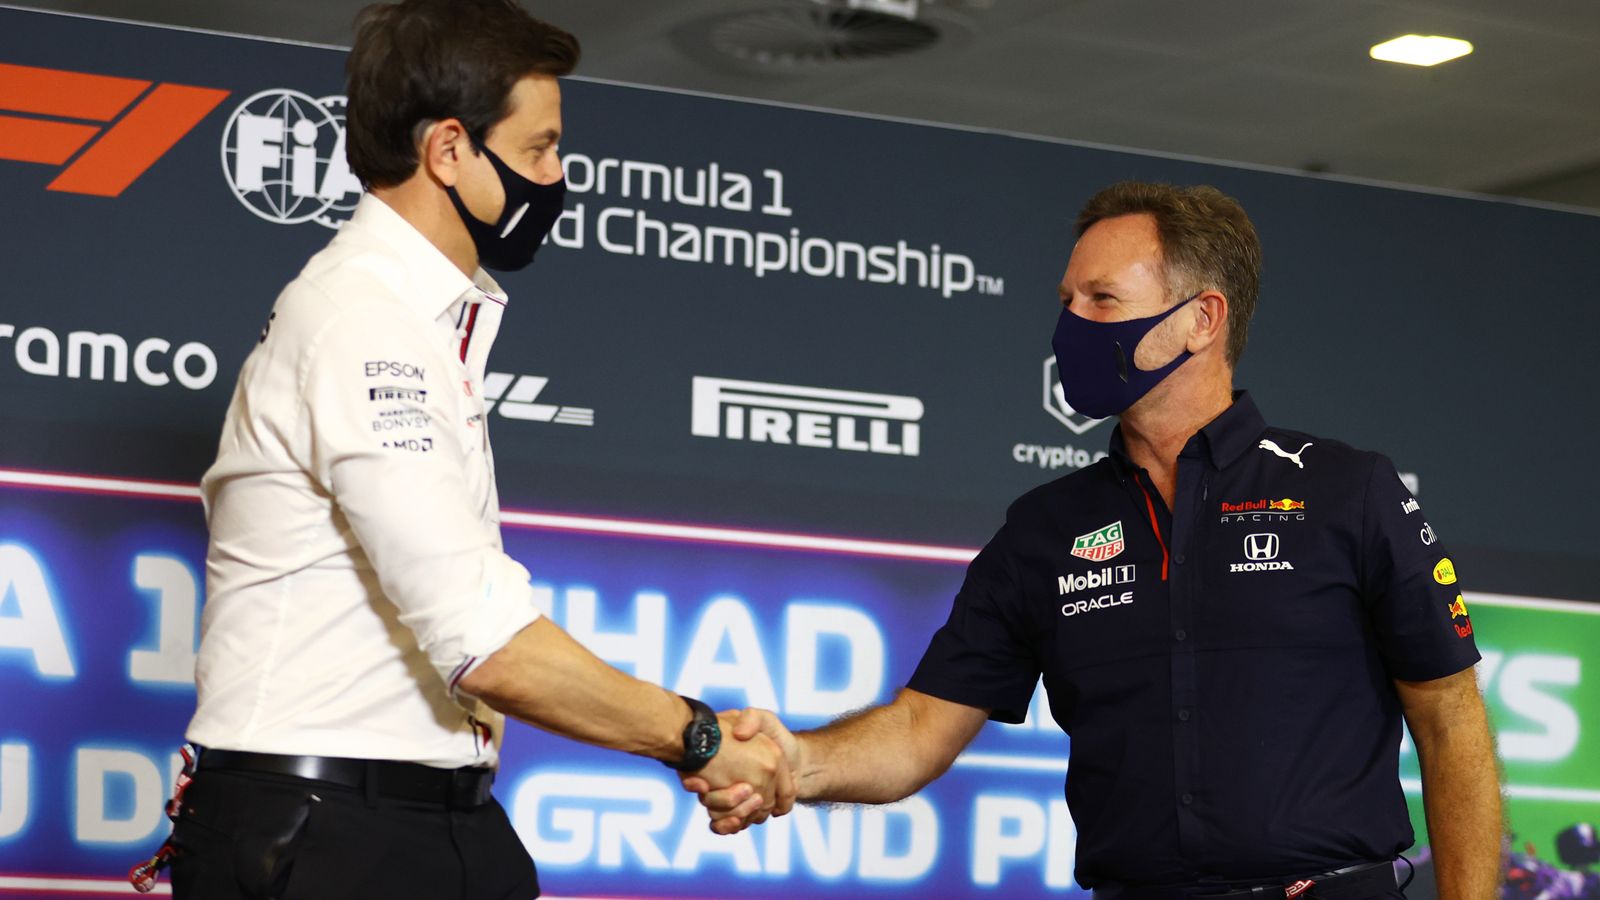 Formel 1 News: Nach Streit um Top-Ingenieur: Mercedes & Red Bull einigen sich auf Wechsel